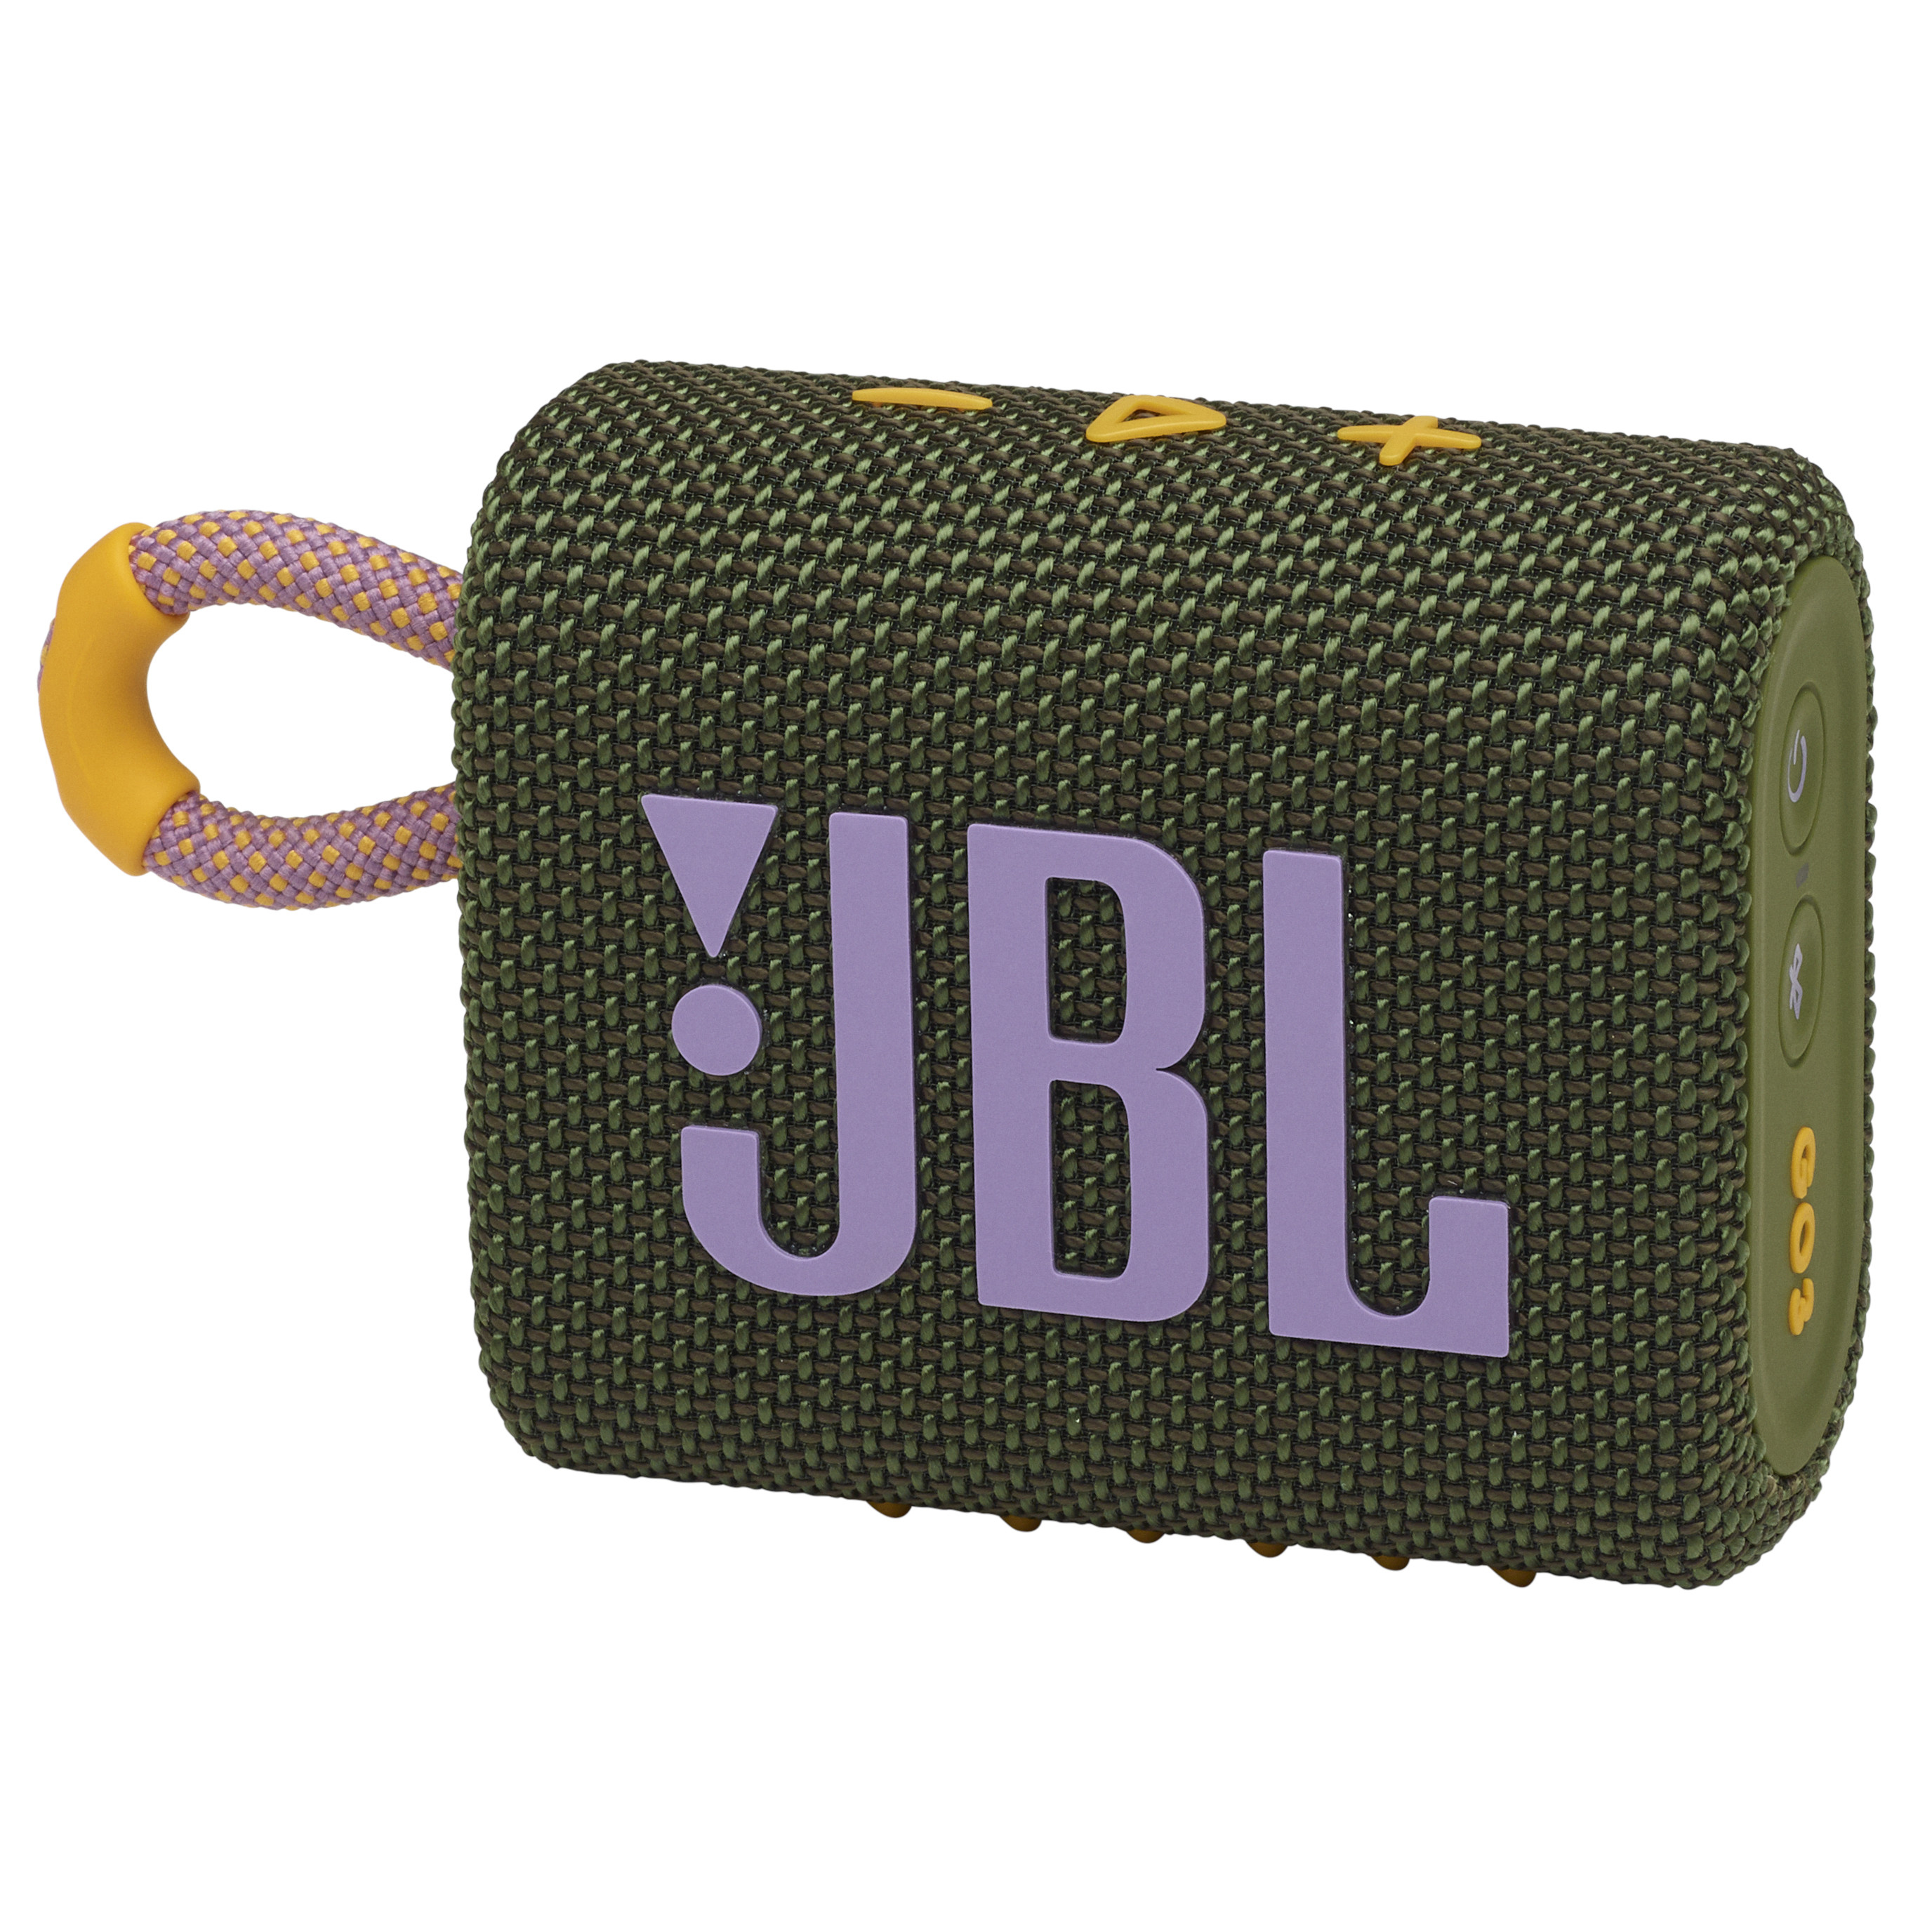 JBL Go 3 - Lautsprecher - tragbar - kabellos